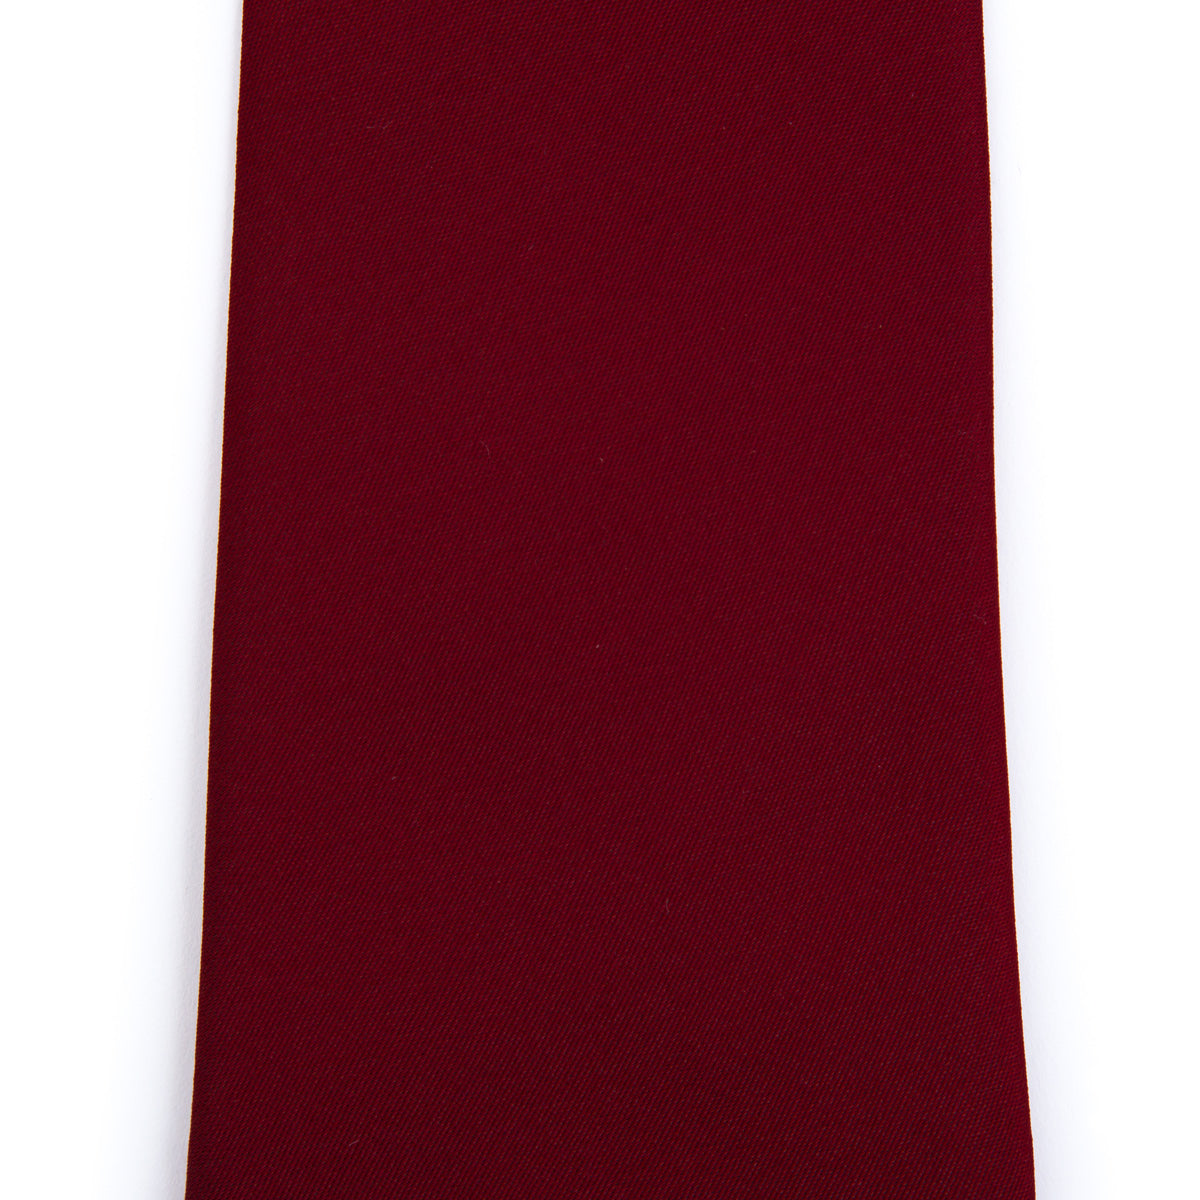 Corbata lisa rojo persa